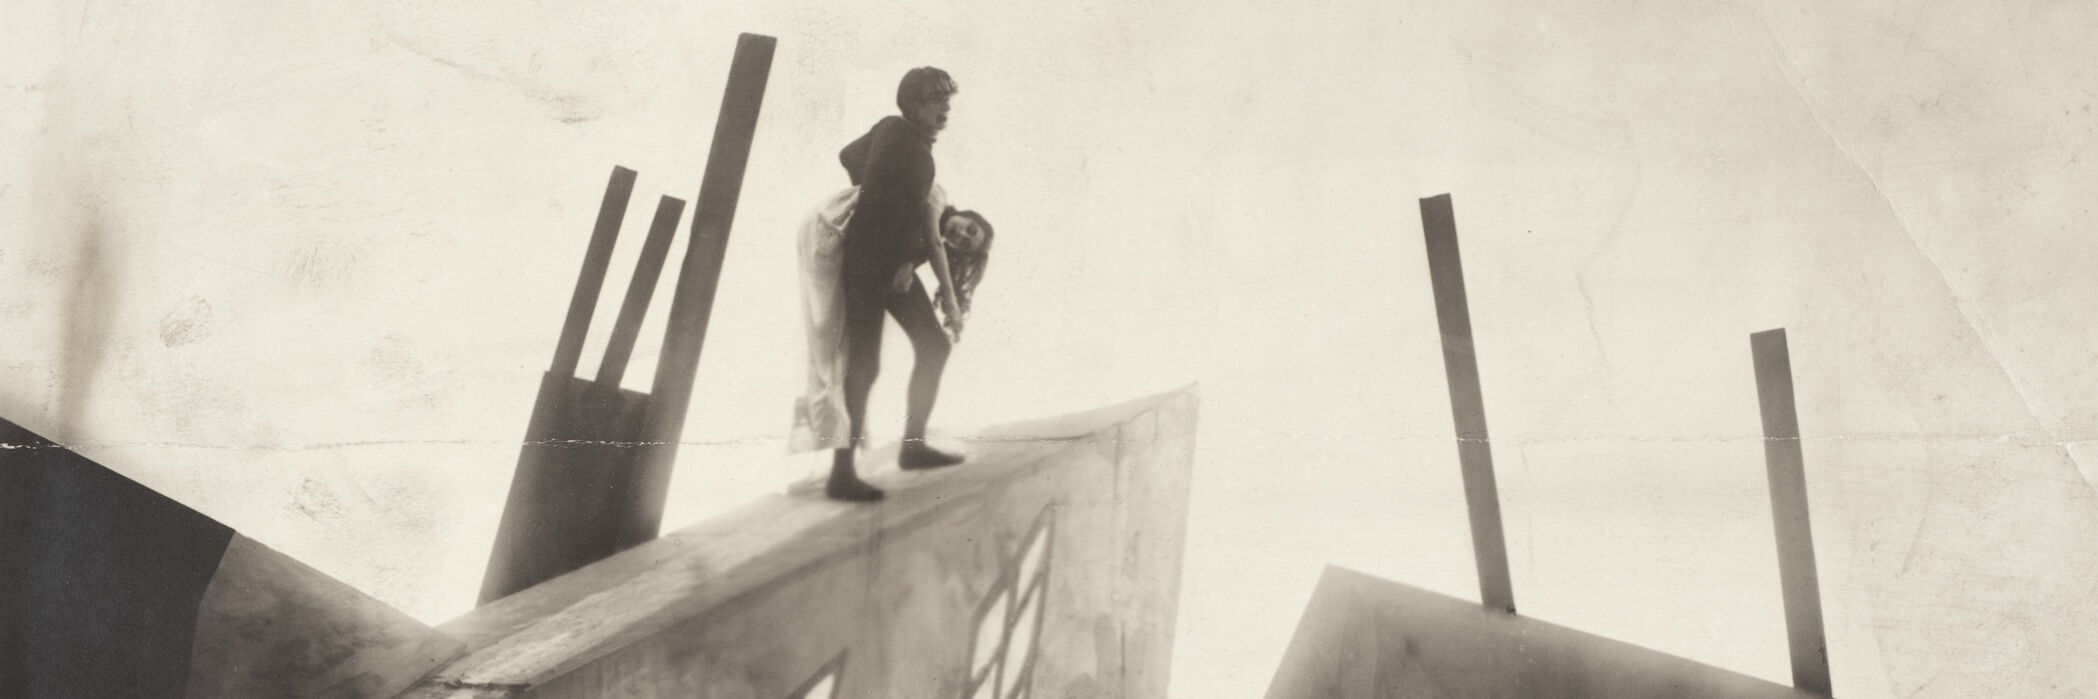 Das Cabinet des Dr. Caligari, 1920